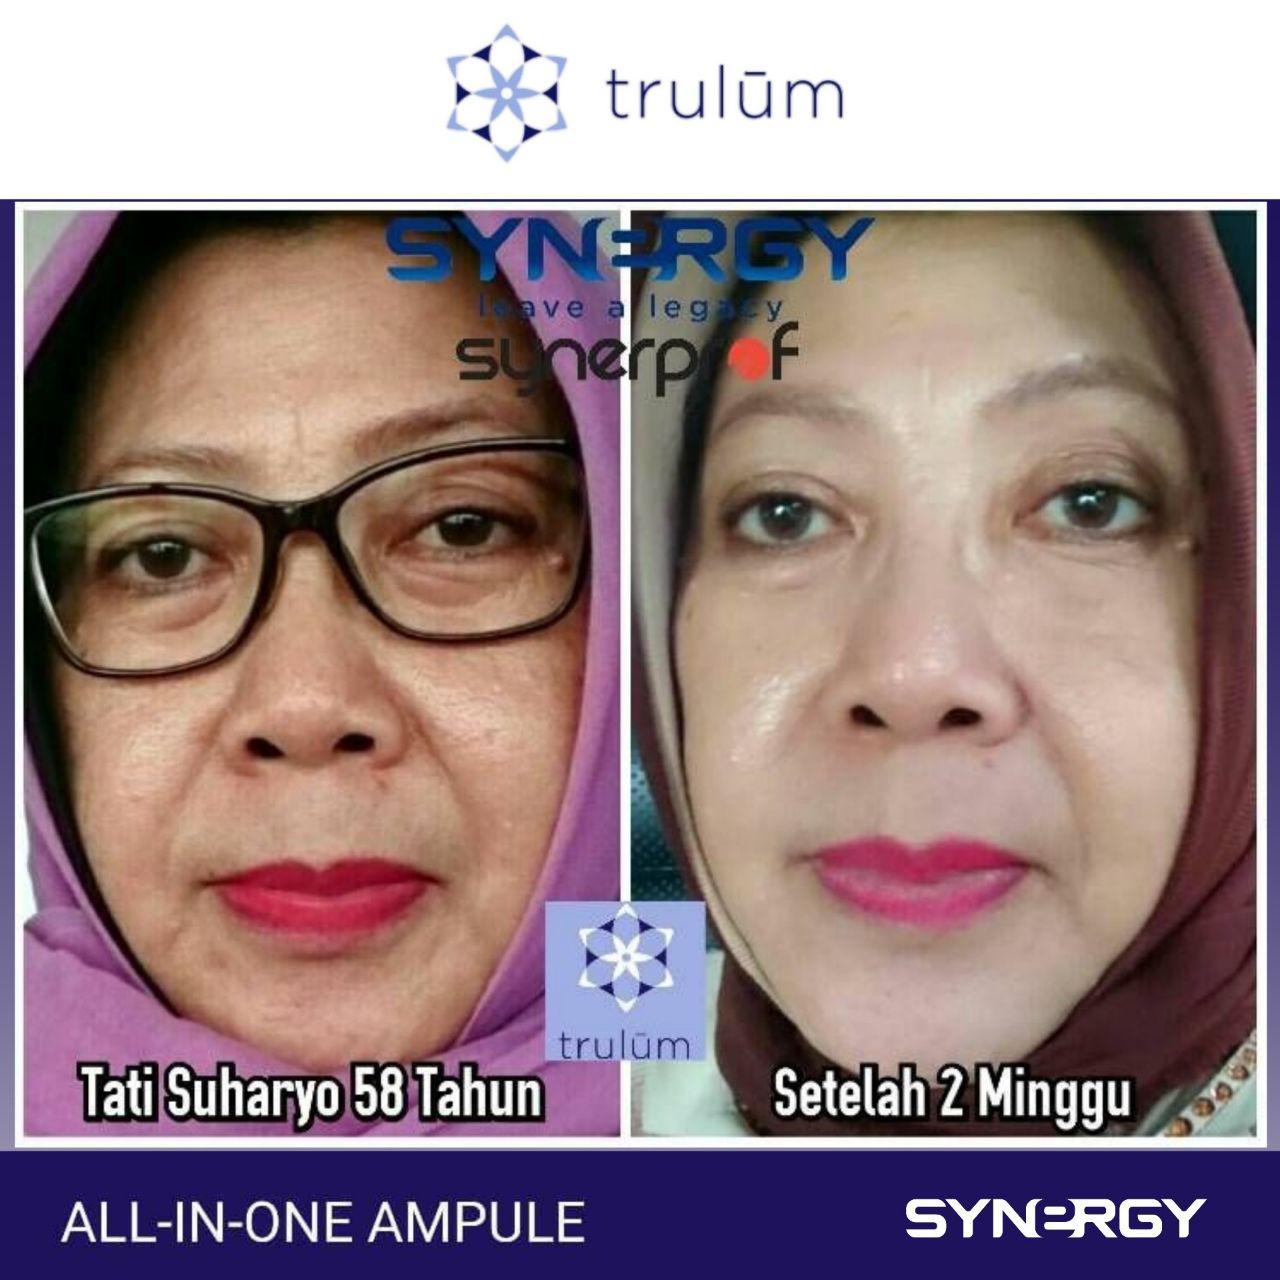 Trulum Skincare Synergy Obat Flek Hitam Di Hidung Di Area Mandrajaya, Ciemas, Sukabumi Hubungi 6281-1233-8376